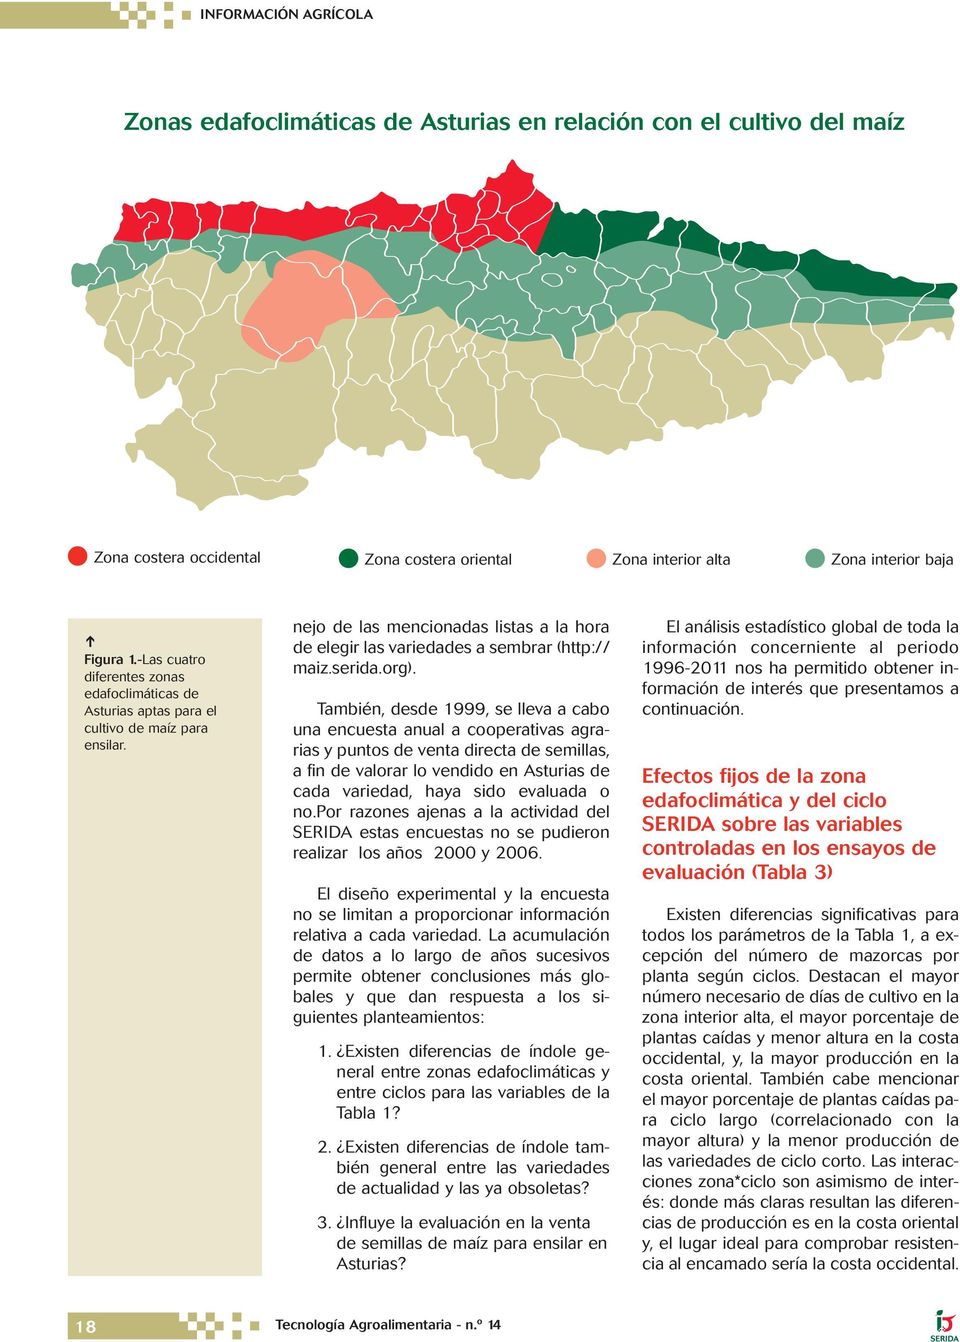 org). También, desde 1999, se lleva a cabo una encuesta anual a cooperativas agrarias y puntos de venta directa de semillas, a fin de valorar lo vendido en Asturias de cada variedad, haya sido